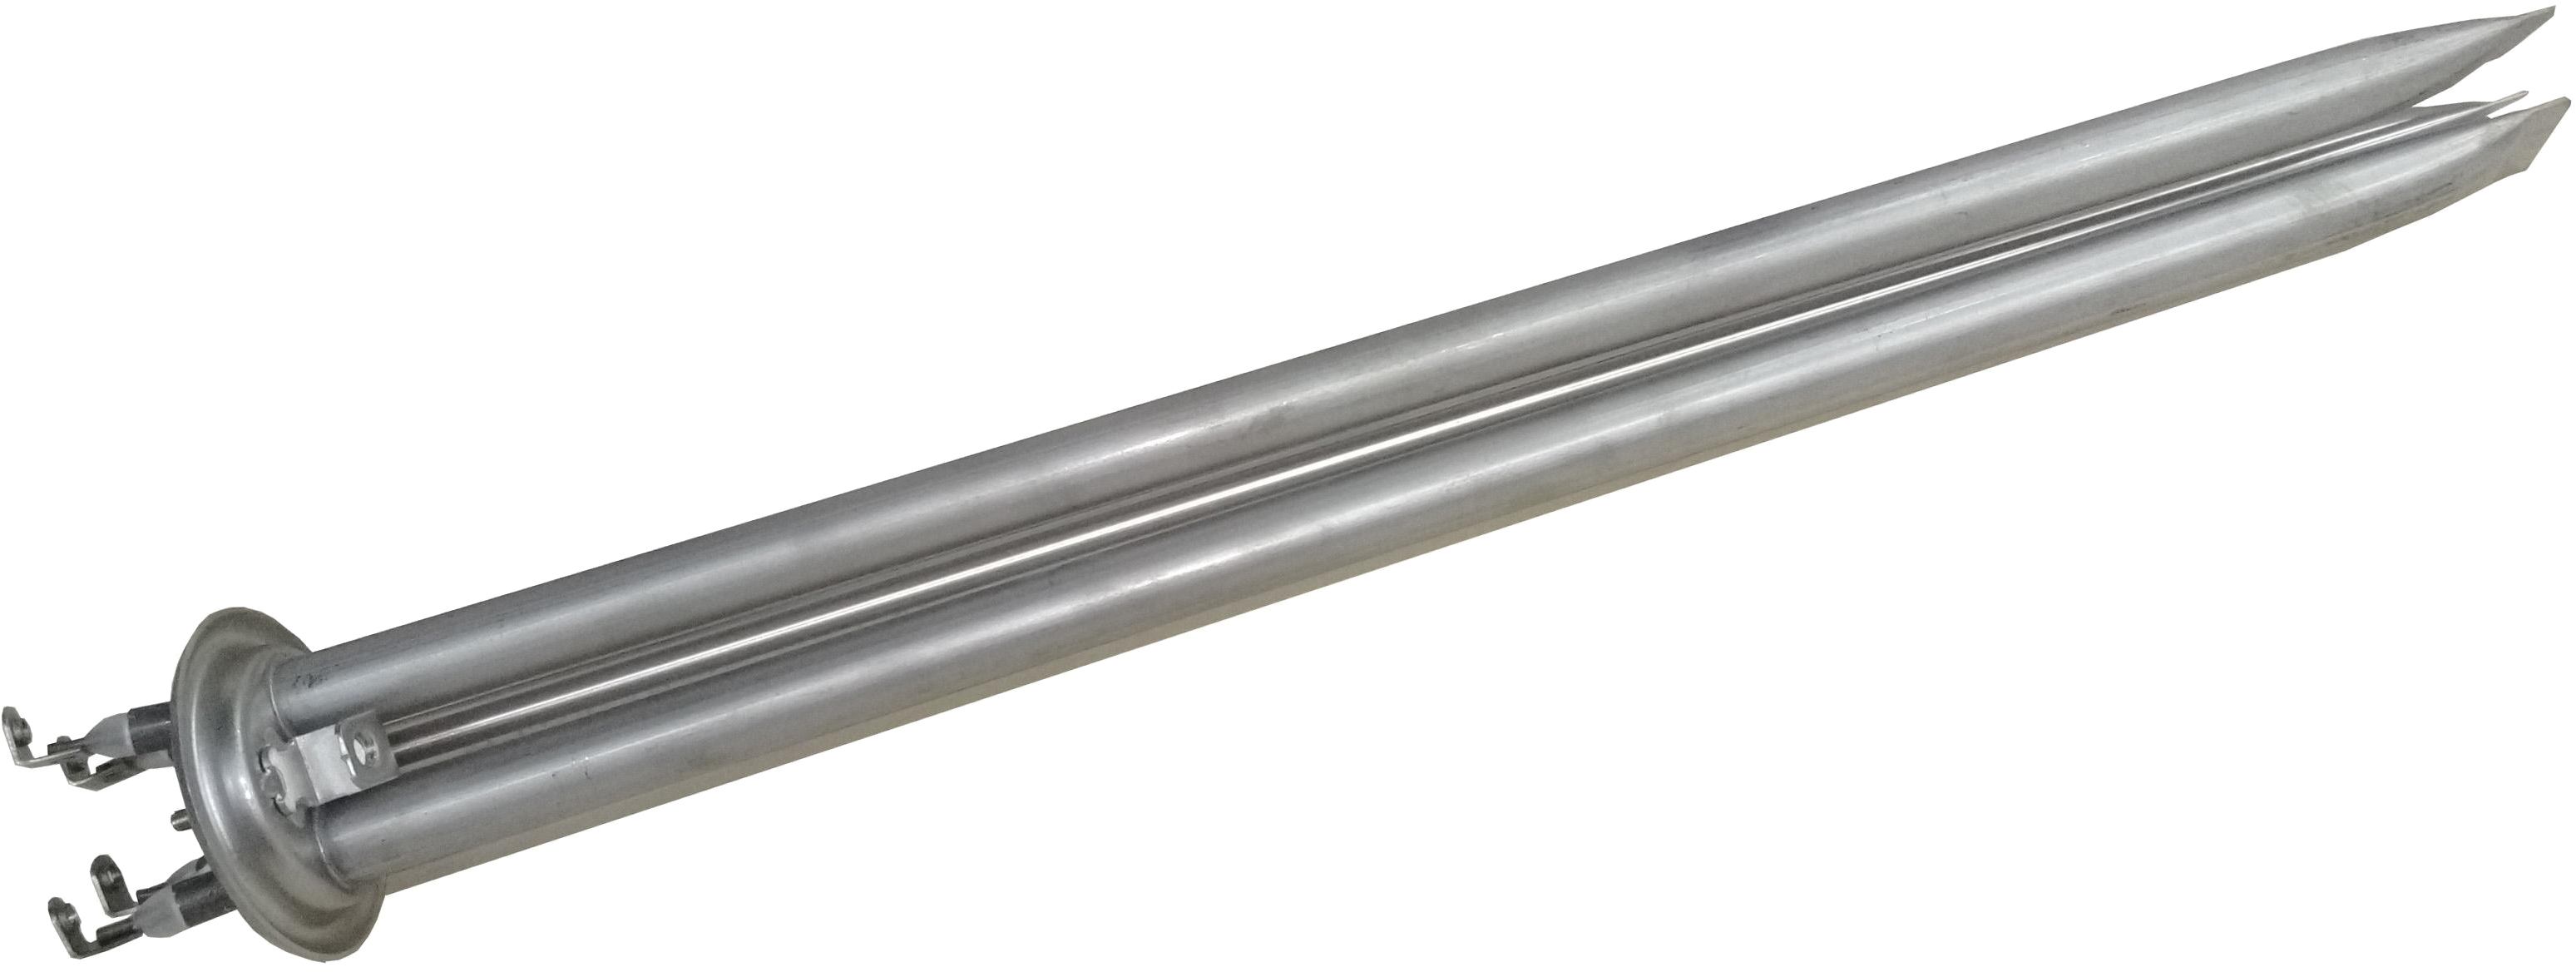 Фланець для водонагрівача Willer на серію Elegance 2400W, (2х800W, d = 63mm, L = 420mm, з ніжкою під анод) (E22-19e)